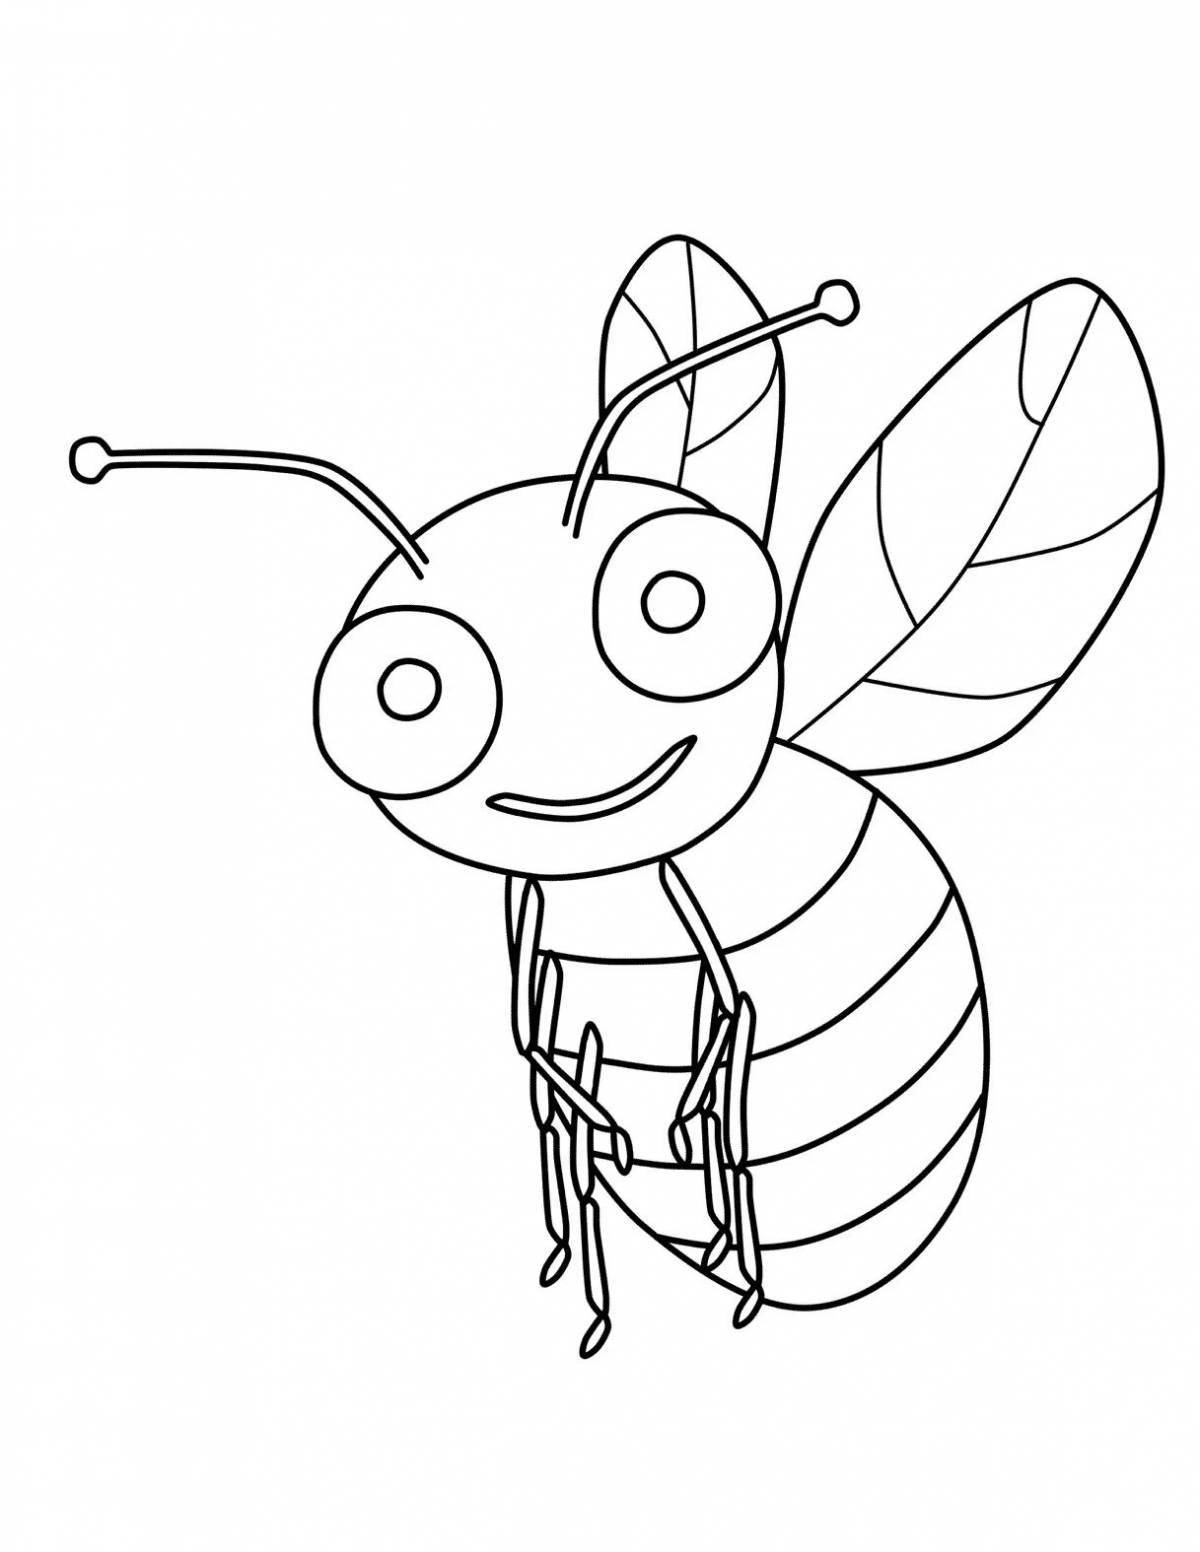 Рисунок пчелы карандашом для срисовки